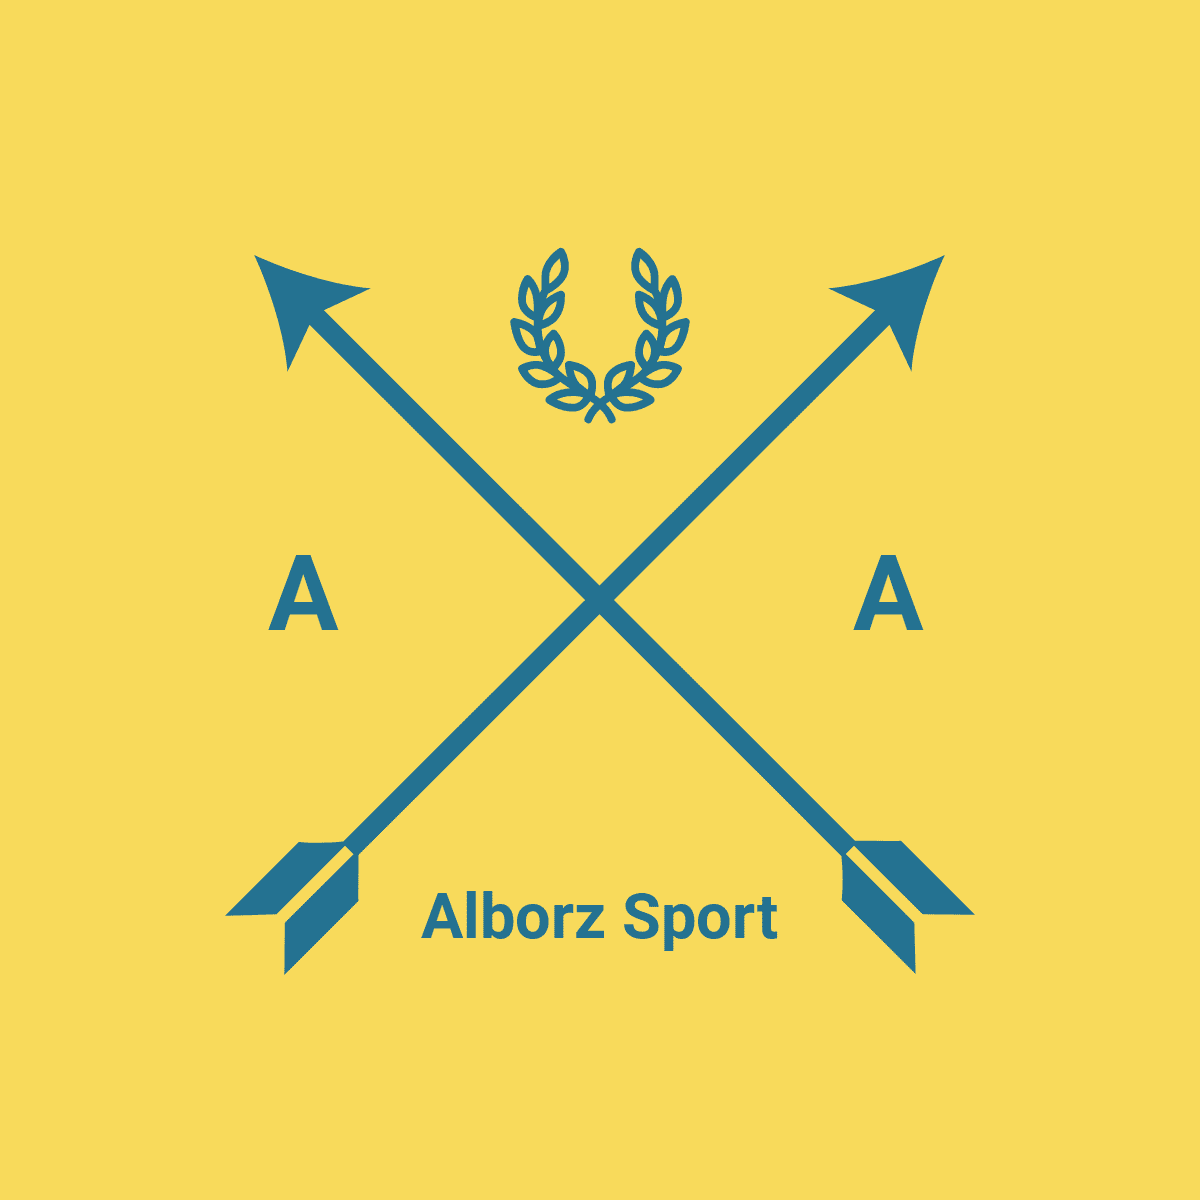 البرز اسپورت – Alborz Sport